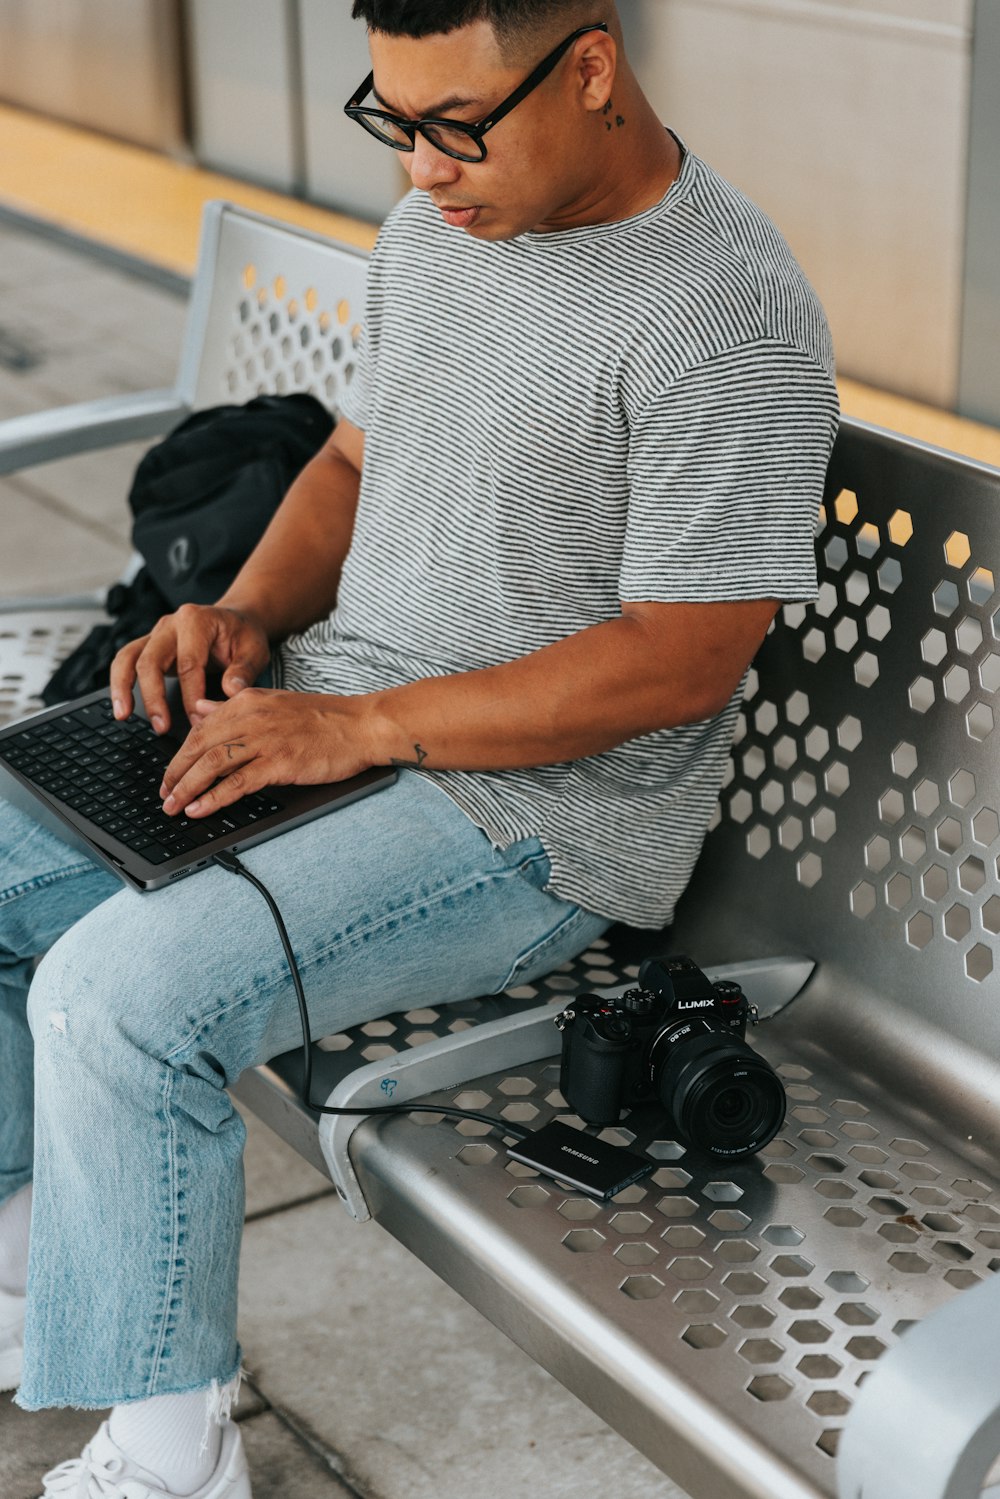 Una persona sentada en una silla usando una computadora portátil